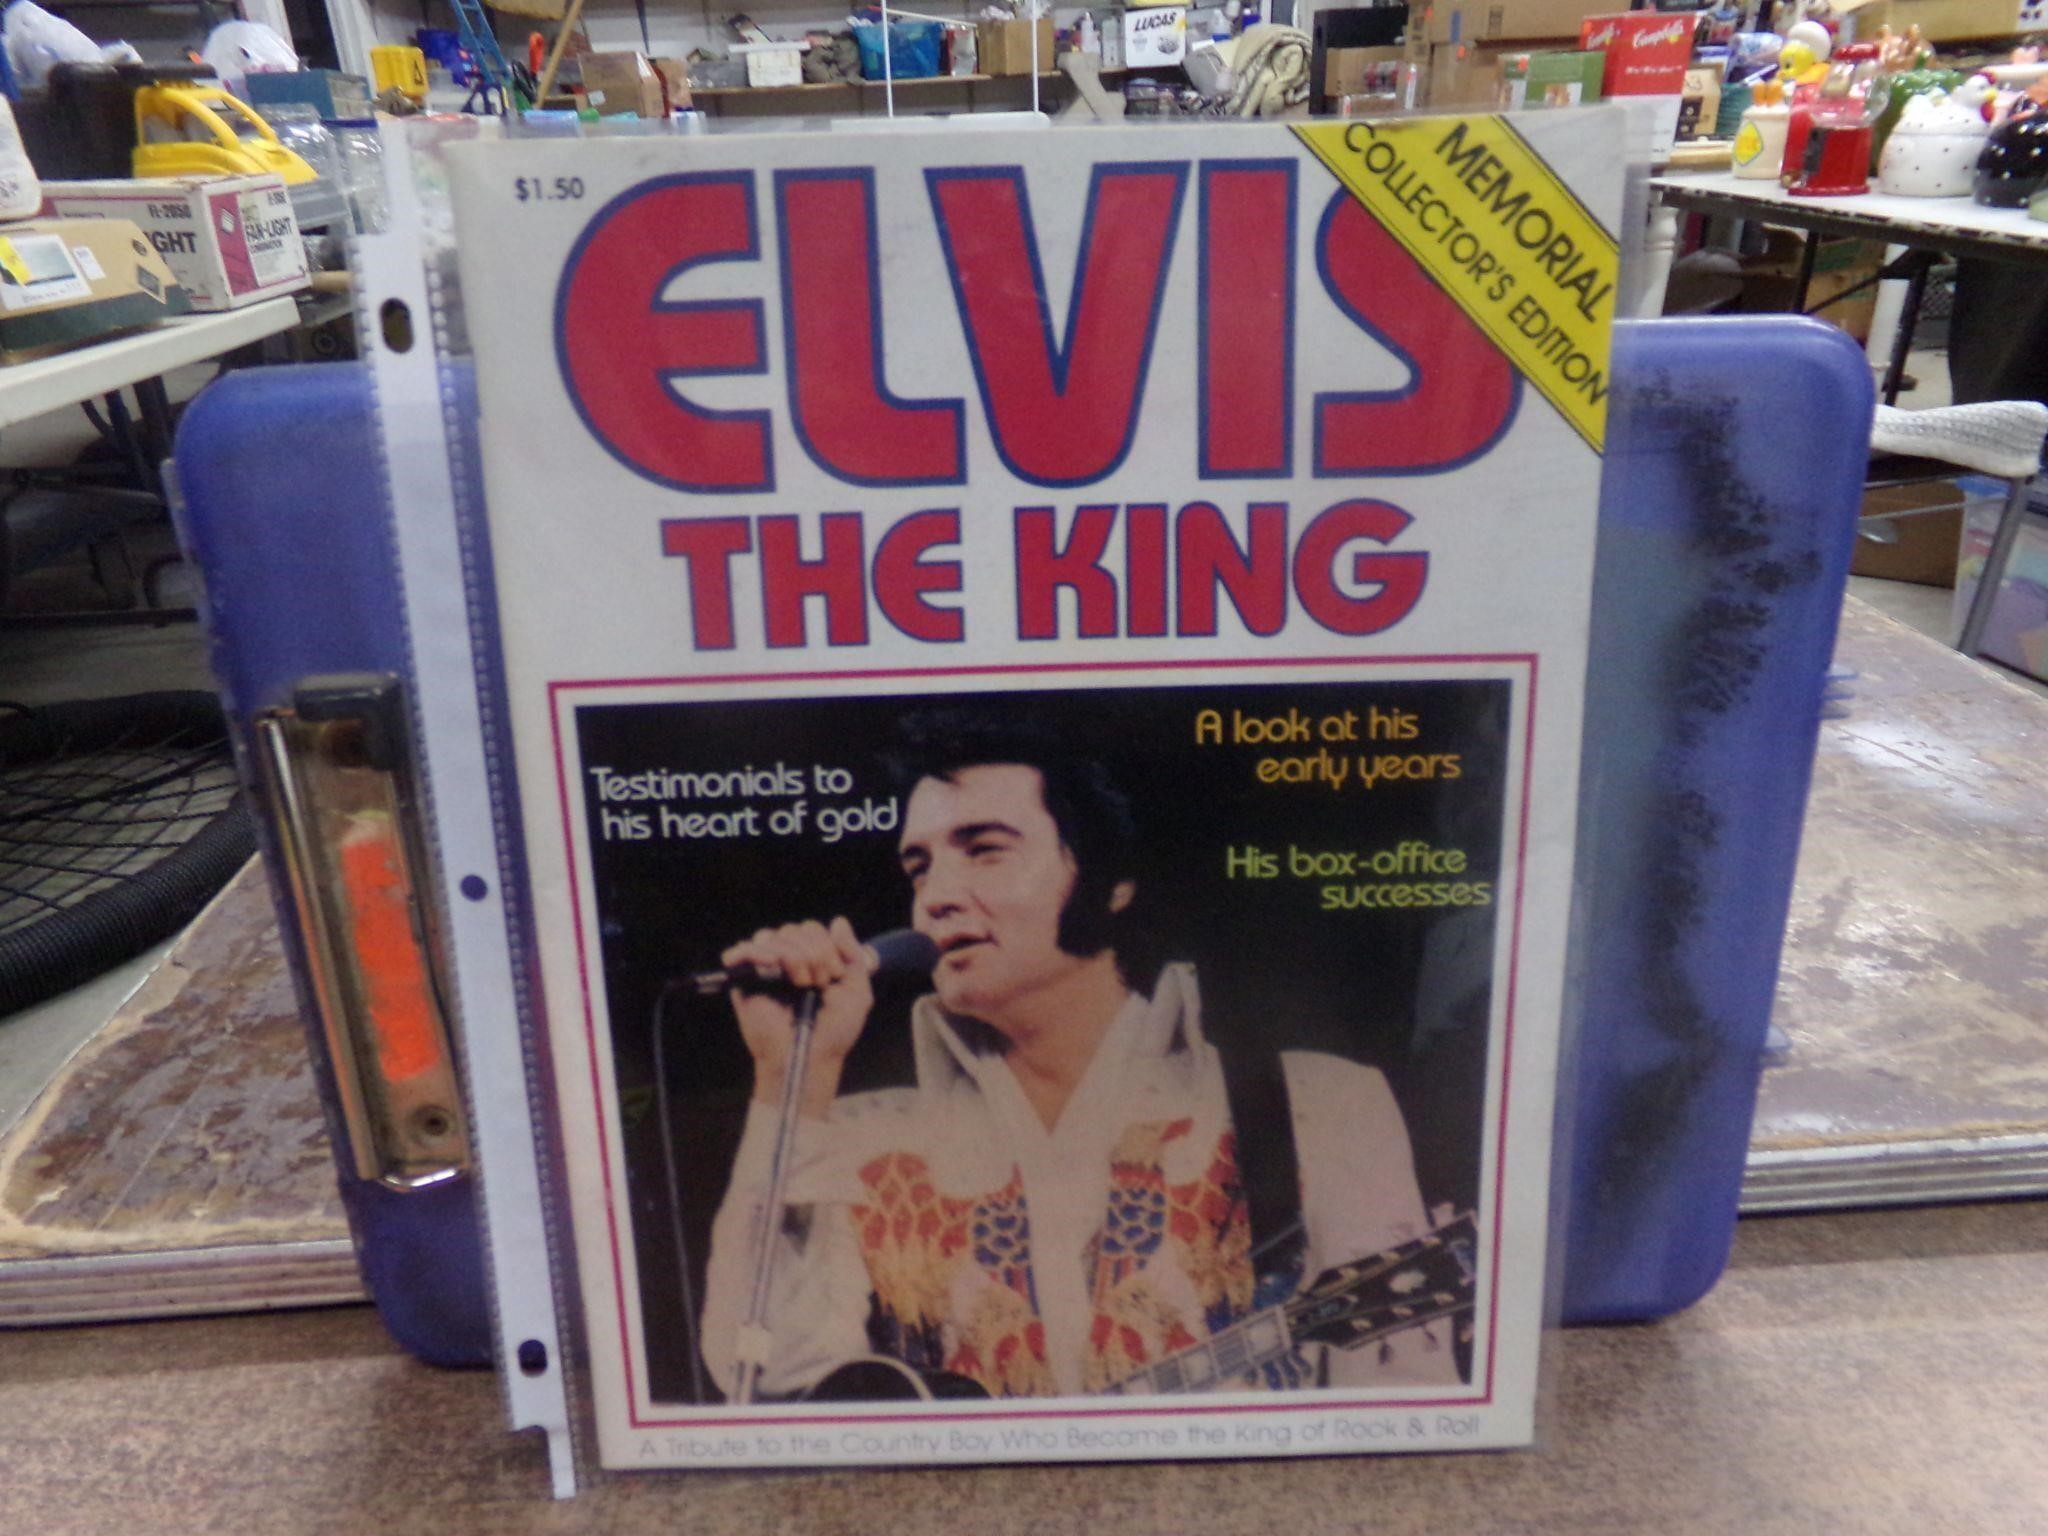 1977 Elvis Memorial magazine